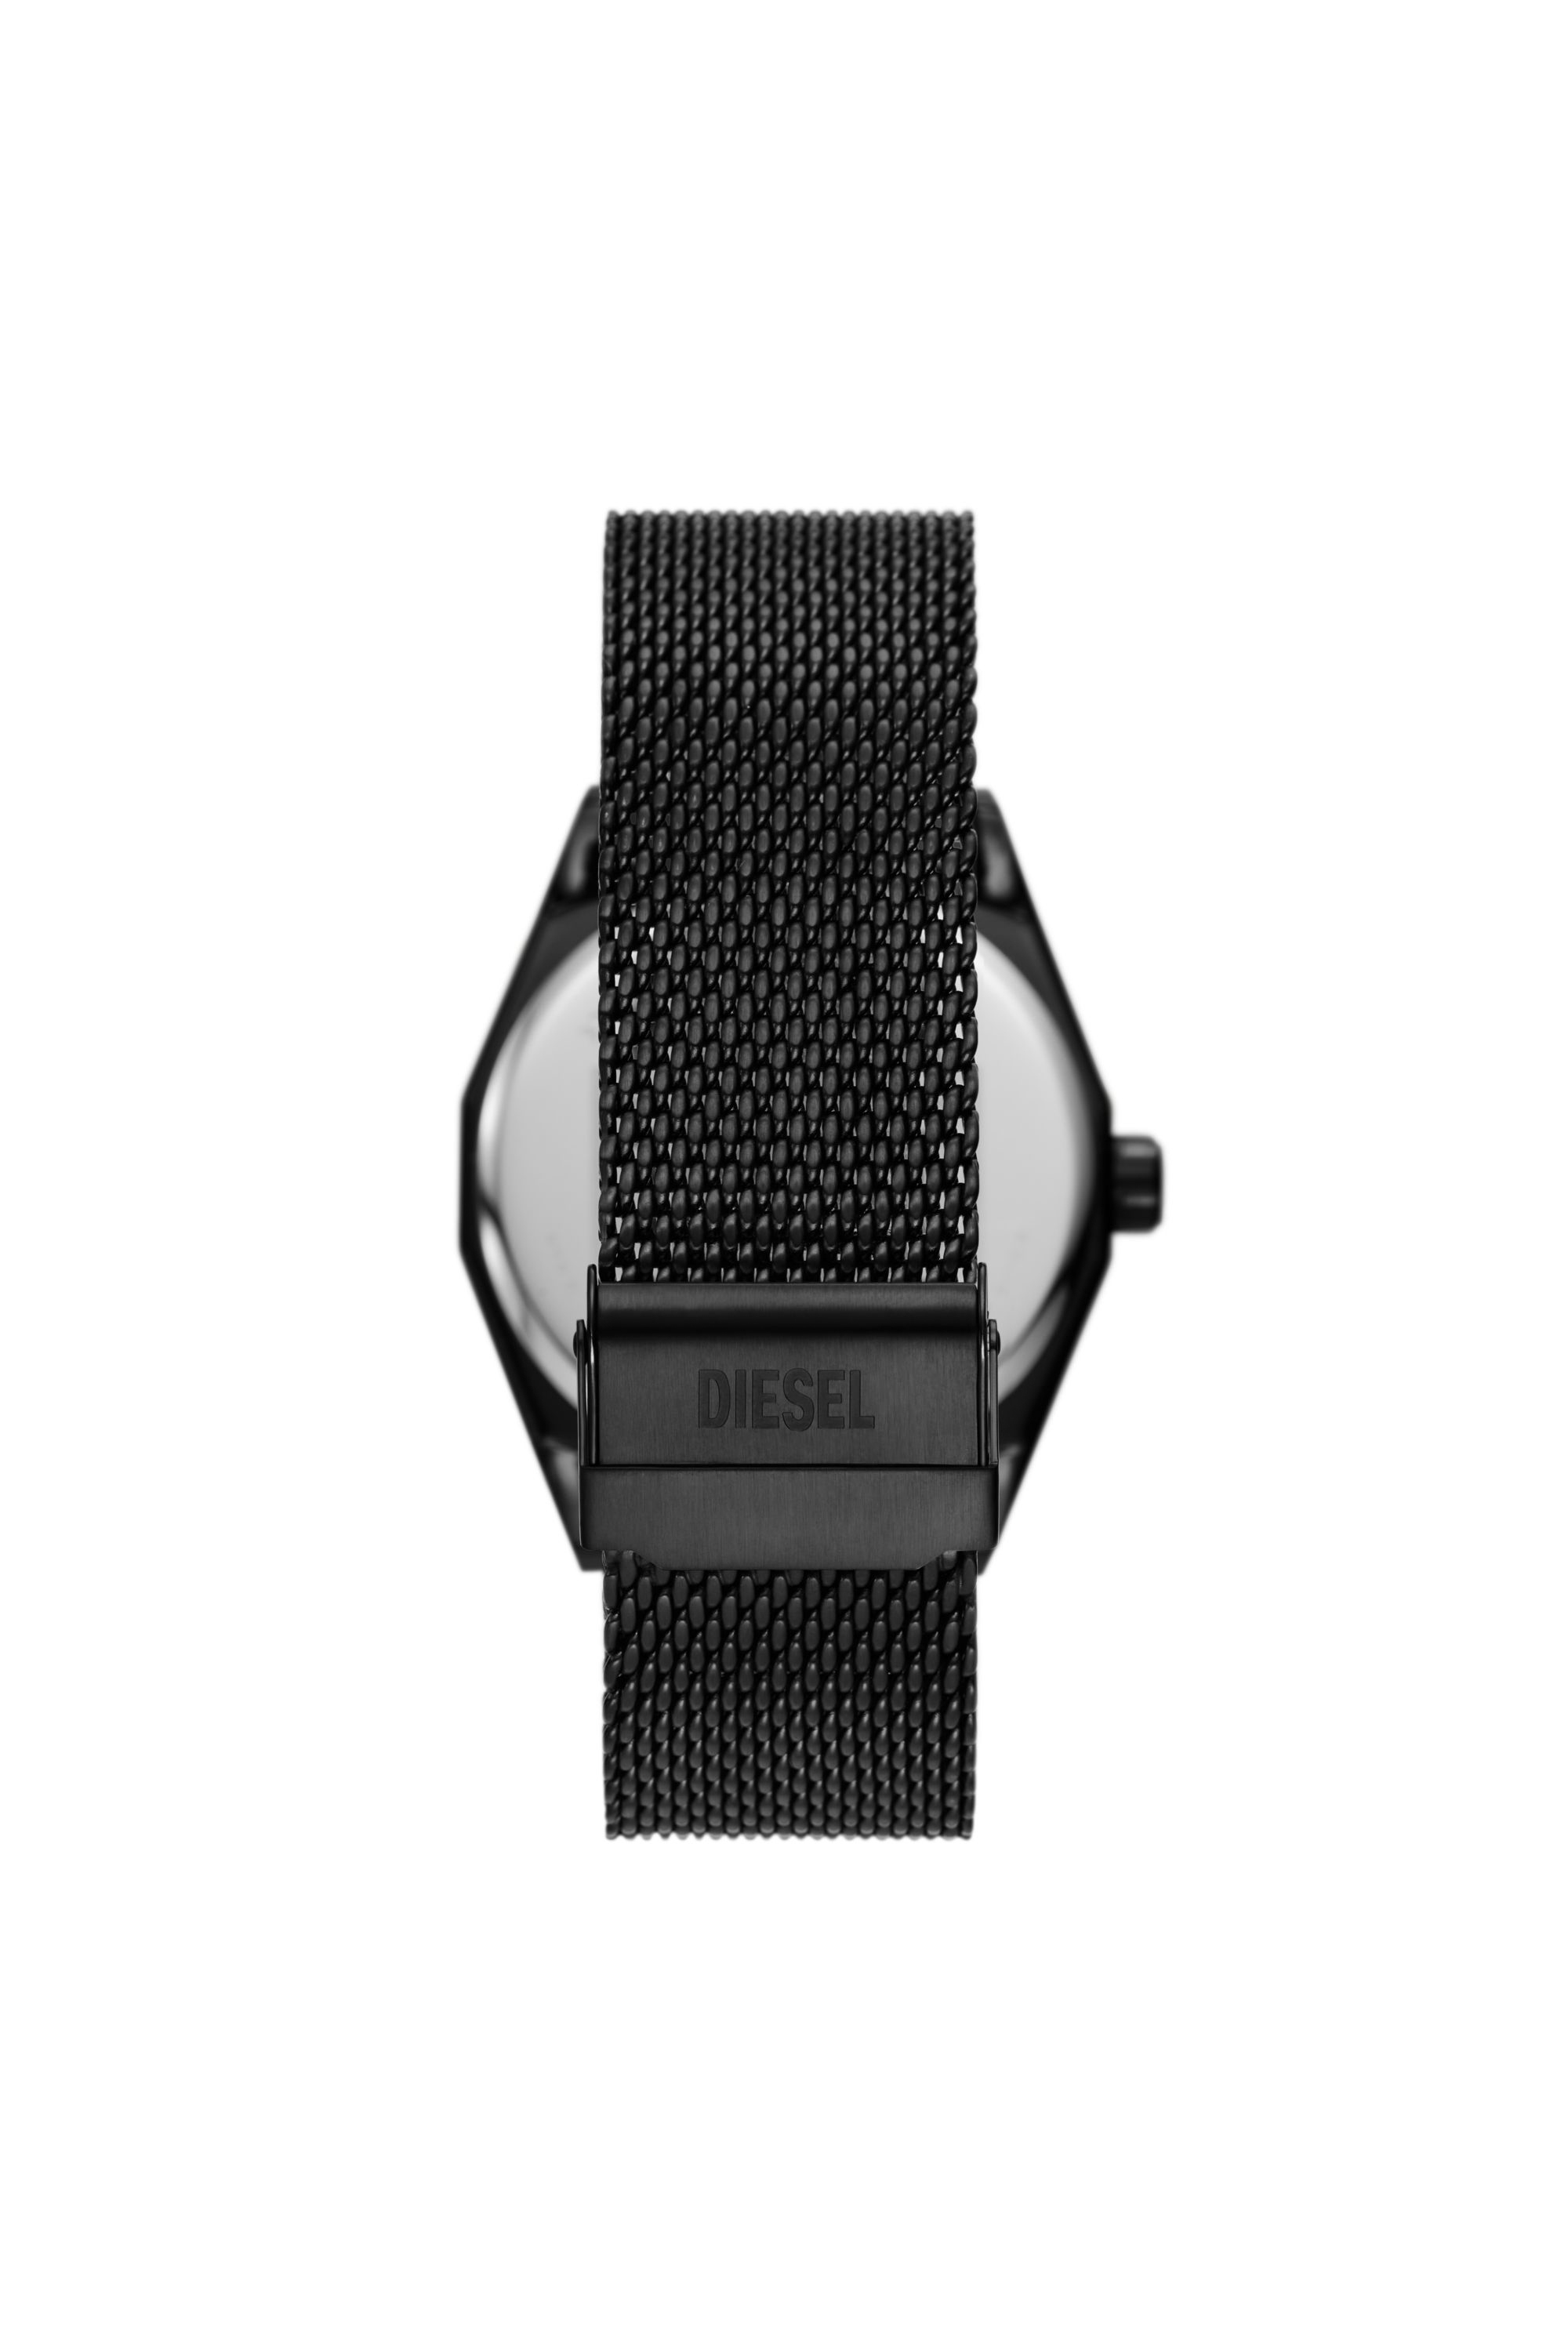 Diesel - DZ2194, Male 腕時計 in ブラック - Image 2